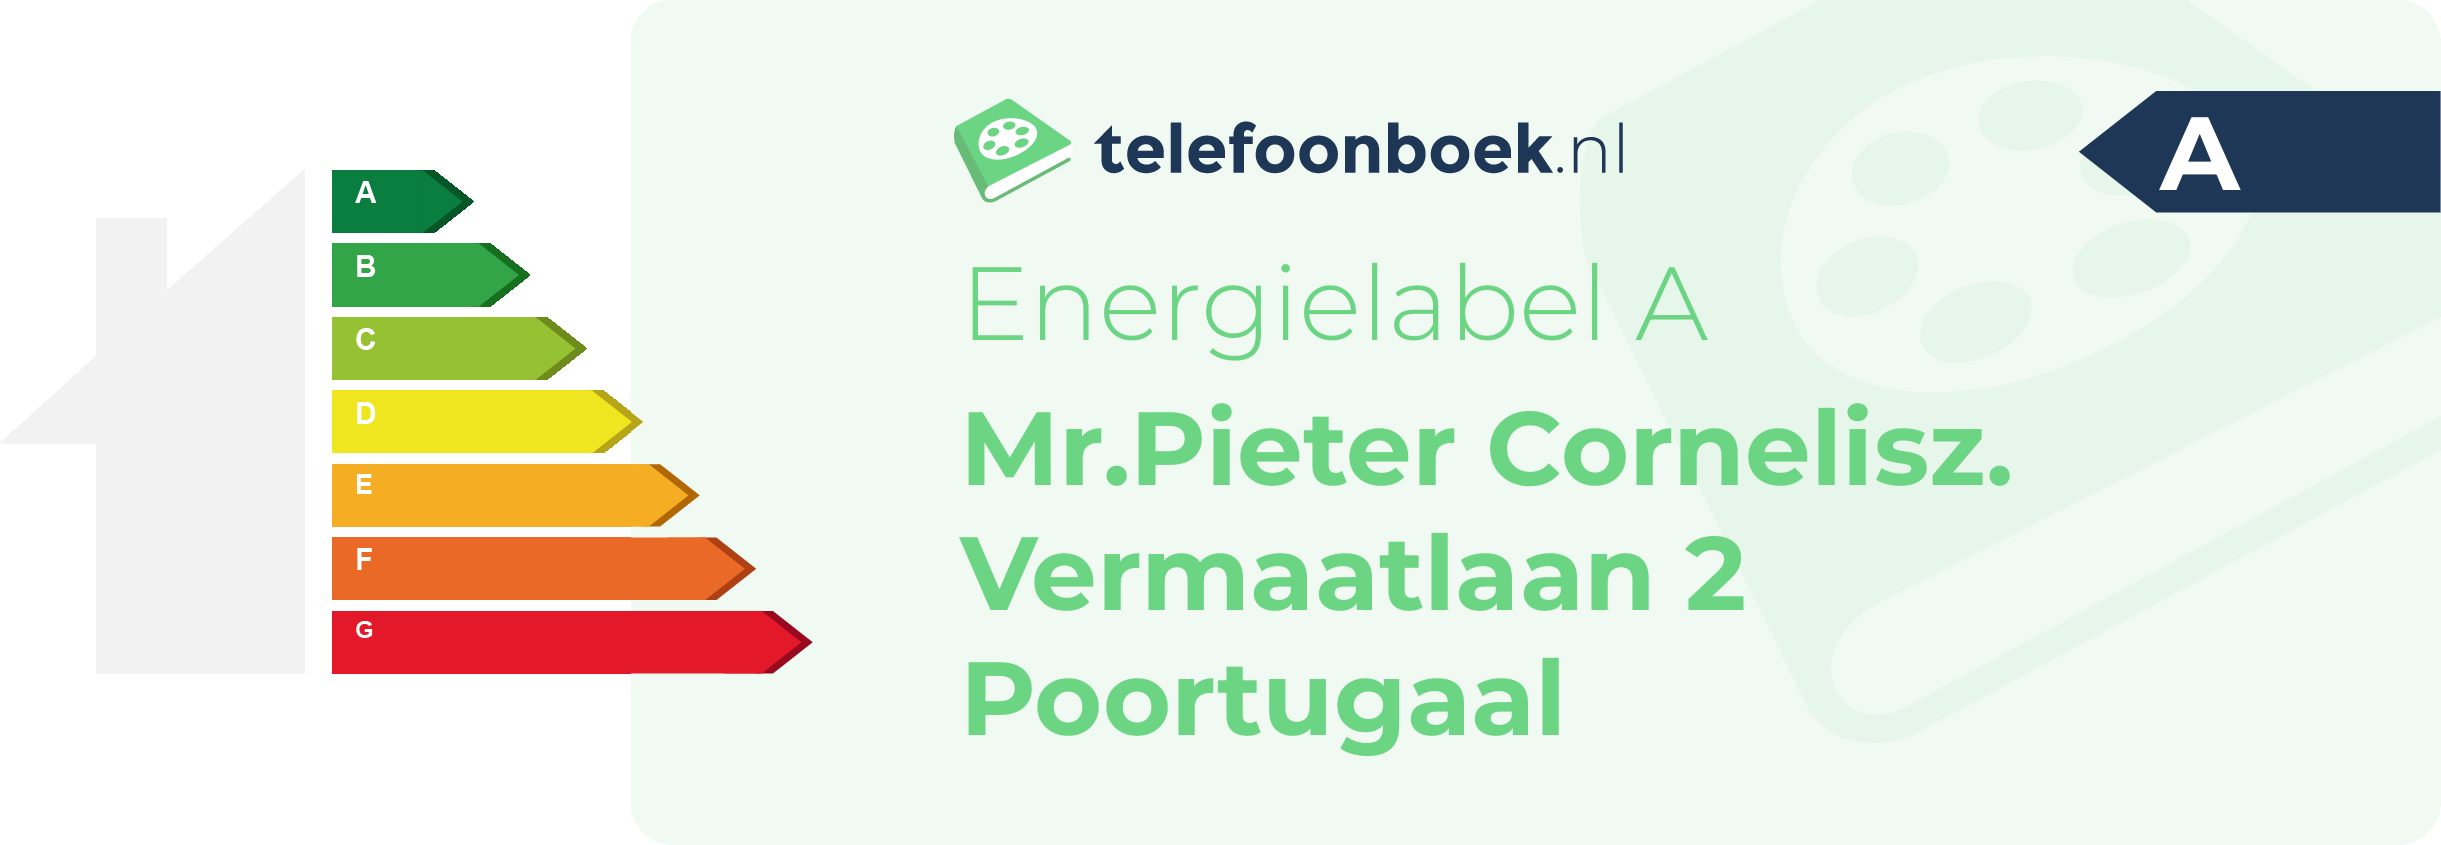 Energielabel Mr.Pieter Cornelisz. Vermaatlaan 2 Poortugaal